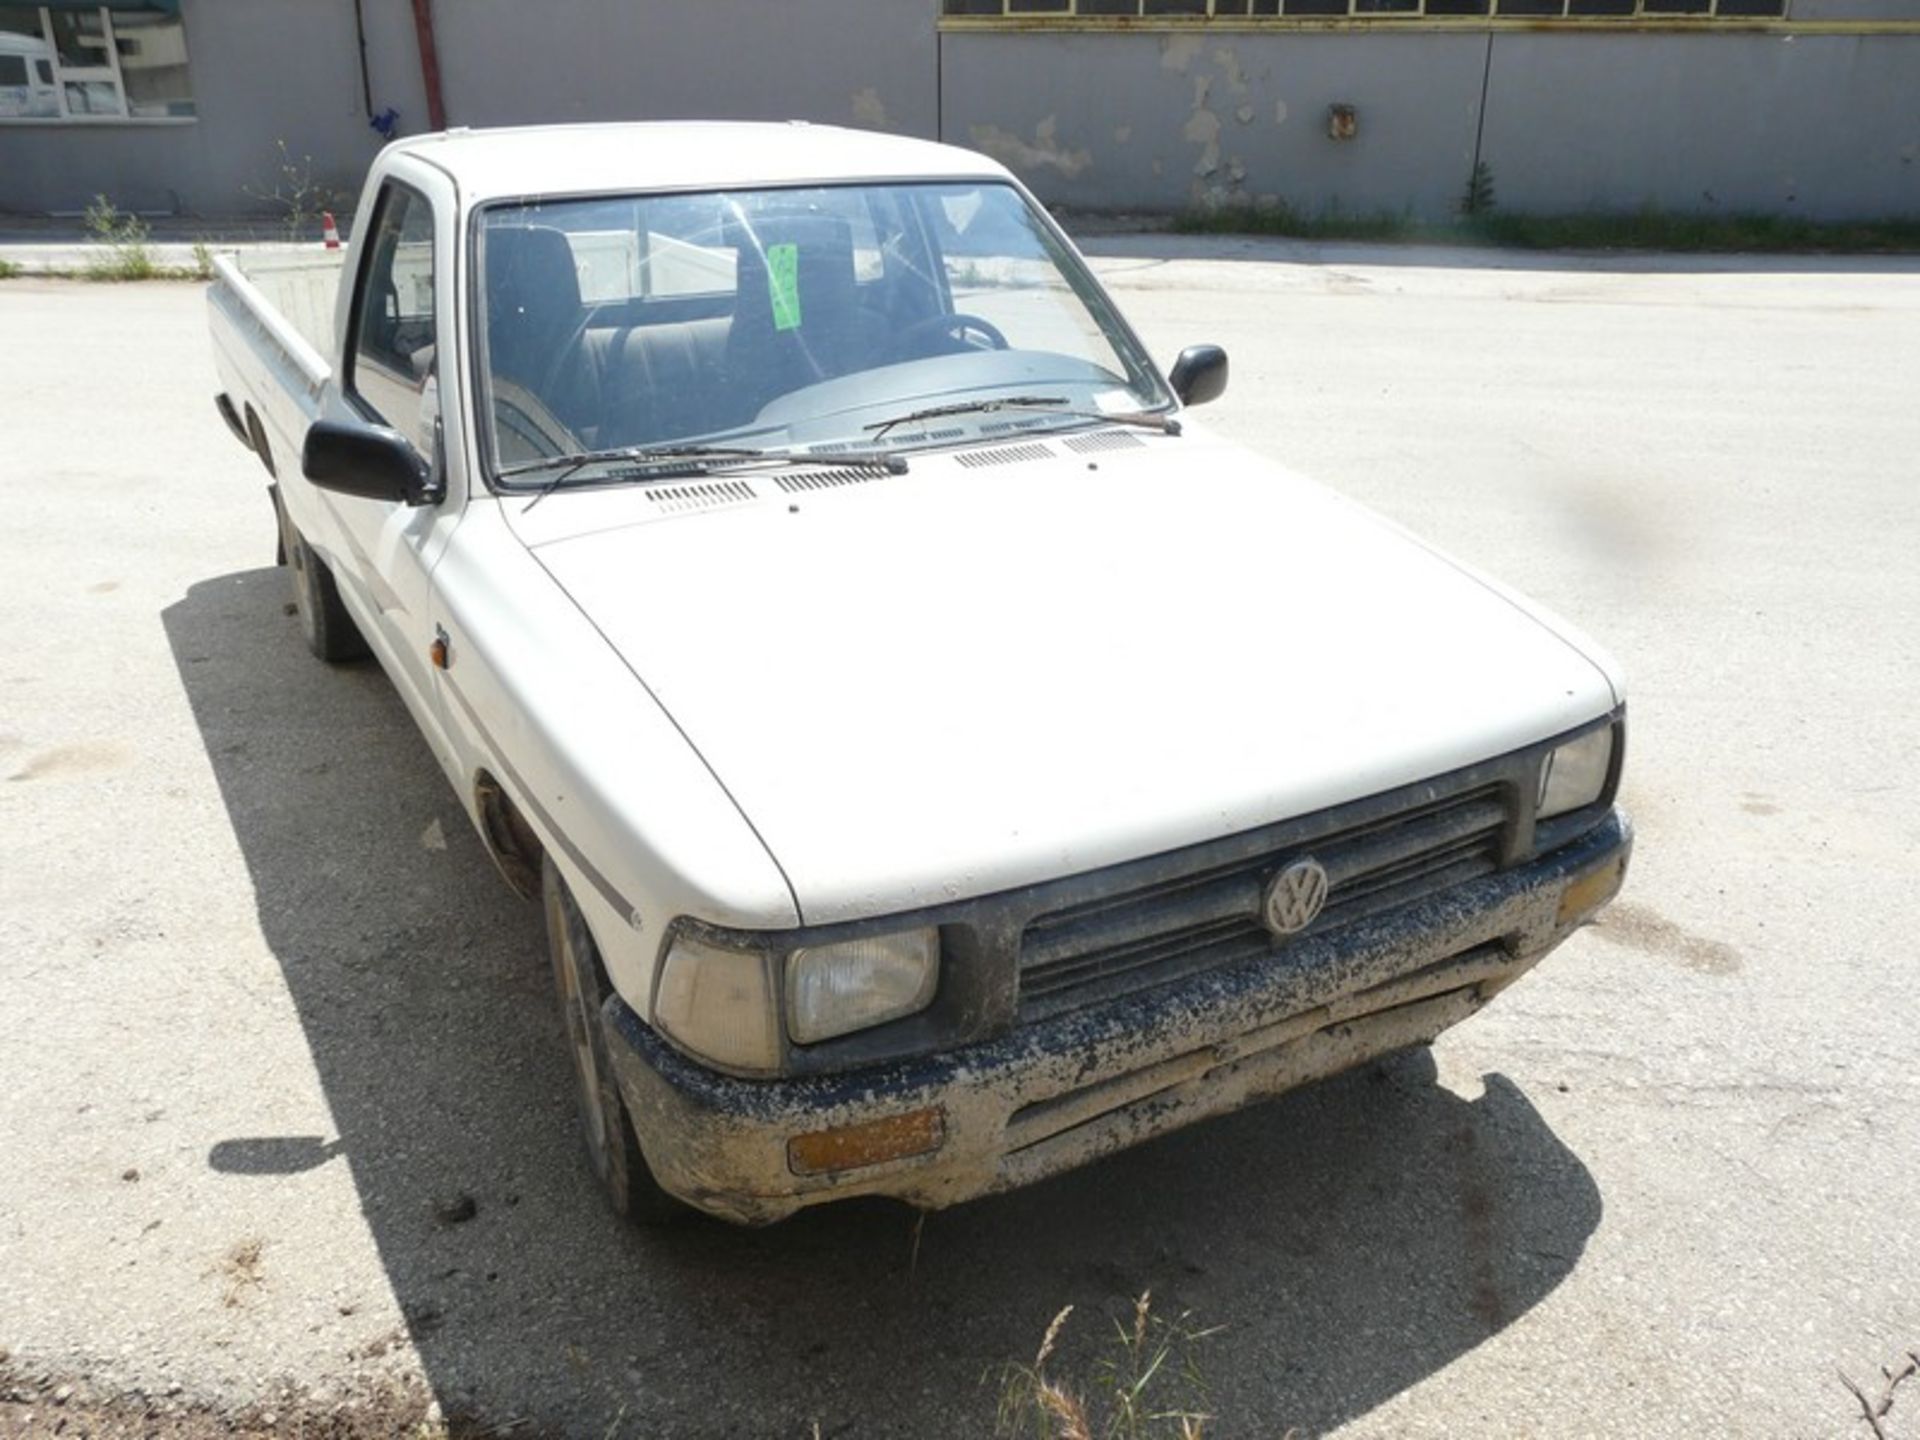 VW TARO 2,4D, KM: 186970, DIESEL, REG: NBY 4241, Year: 1996 (Located in Greece - Orestiada) Greek - Image 4 of 9